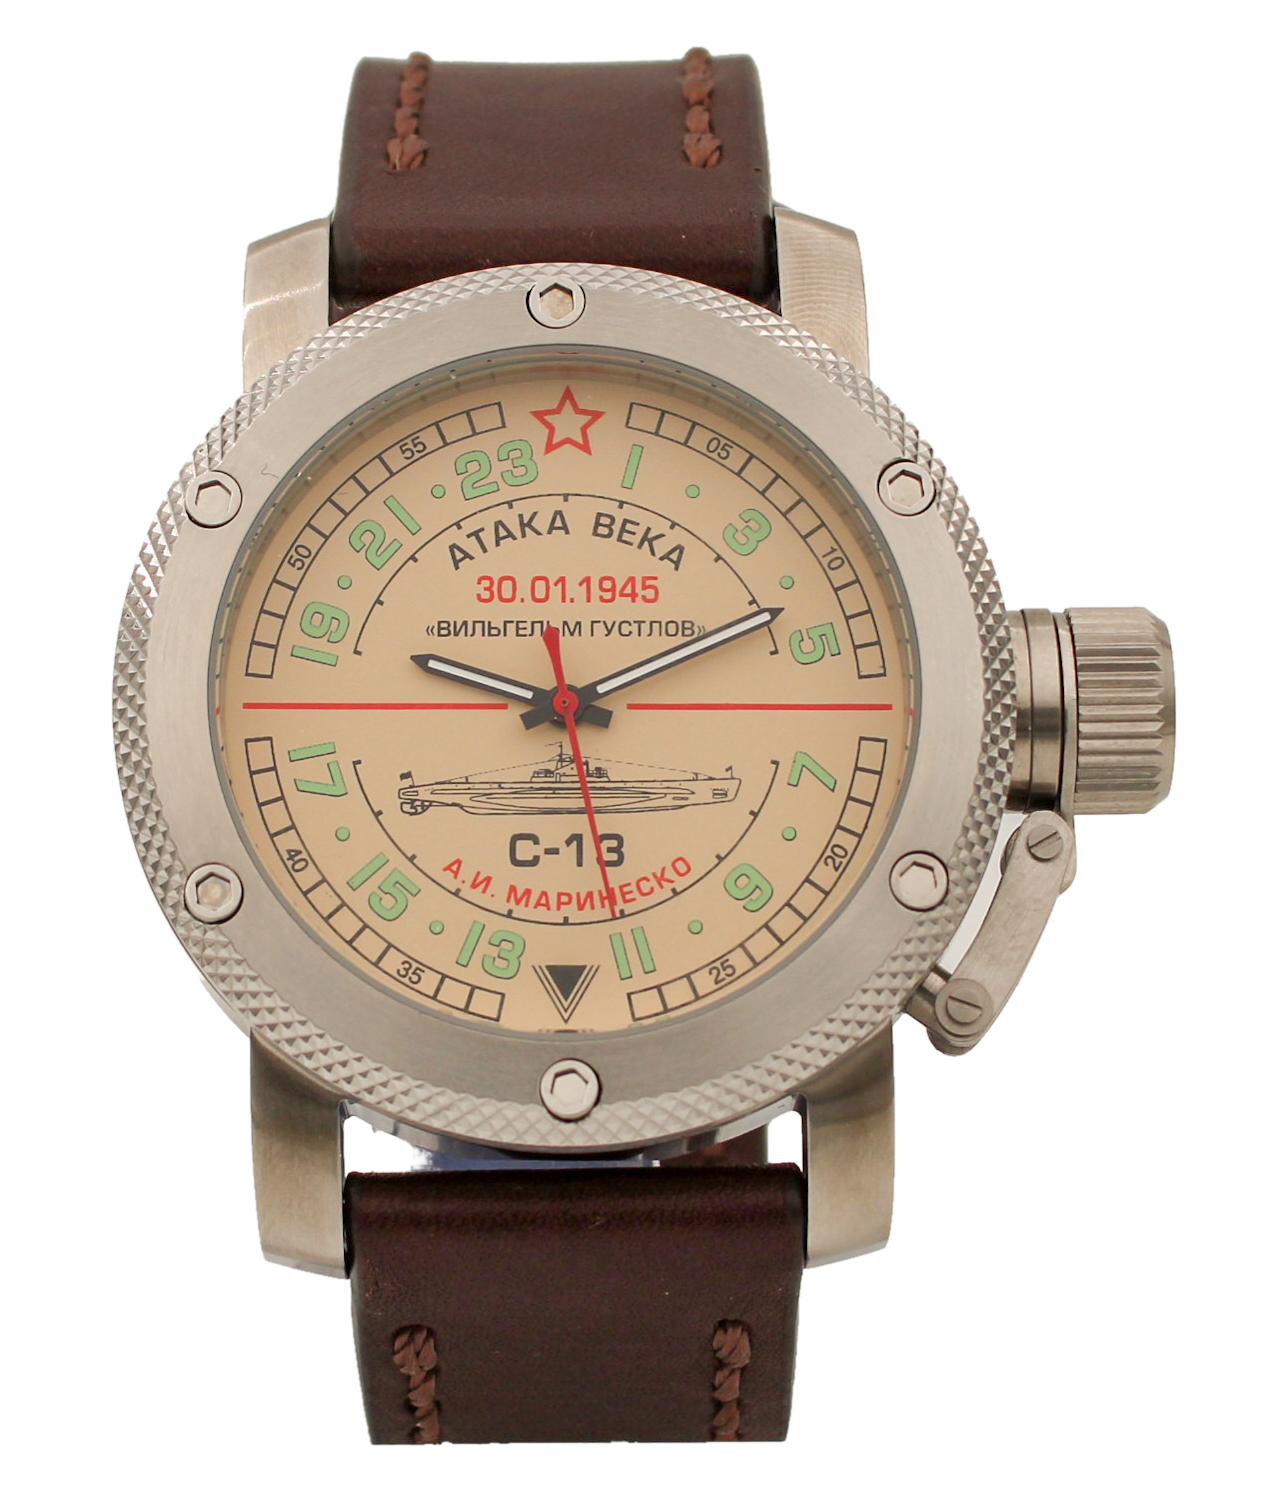 Наручные часы мужские Watch Triumph С-13 